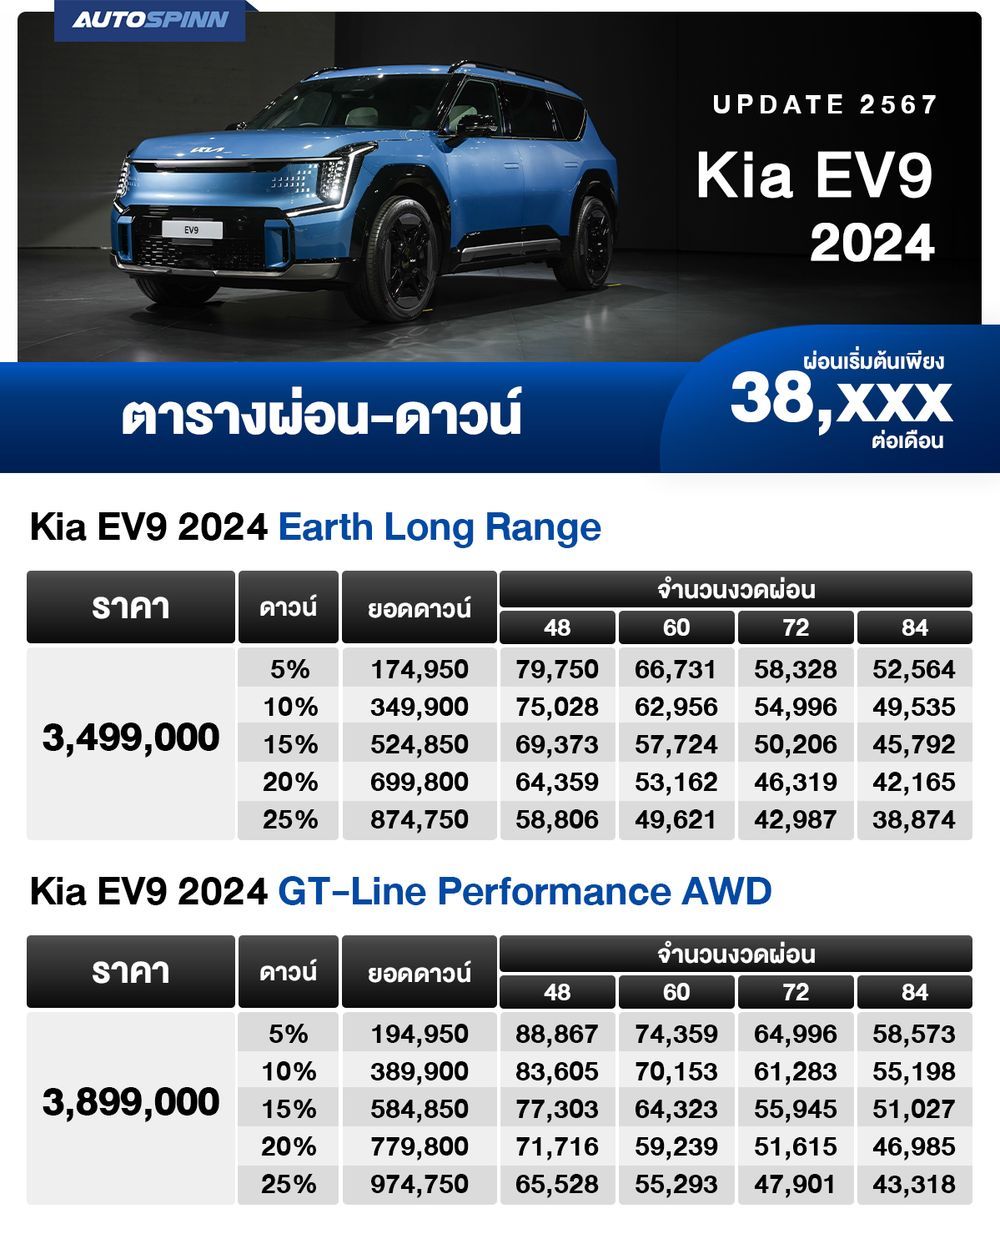 ตารางผ่อน Kia EV9 2024 เริ่มต้น 38,XXX บาท